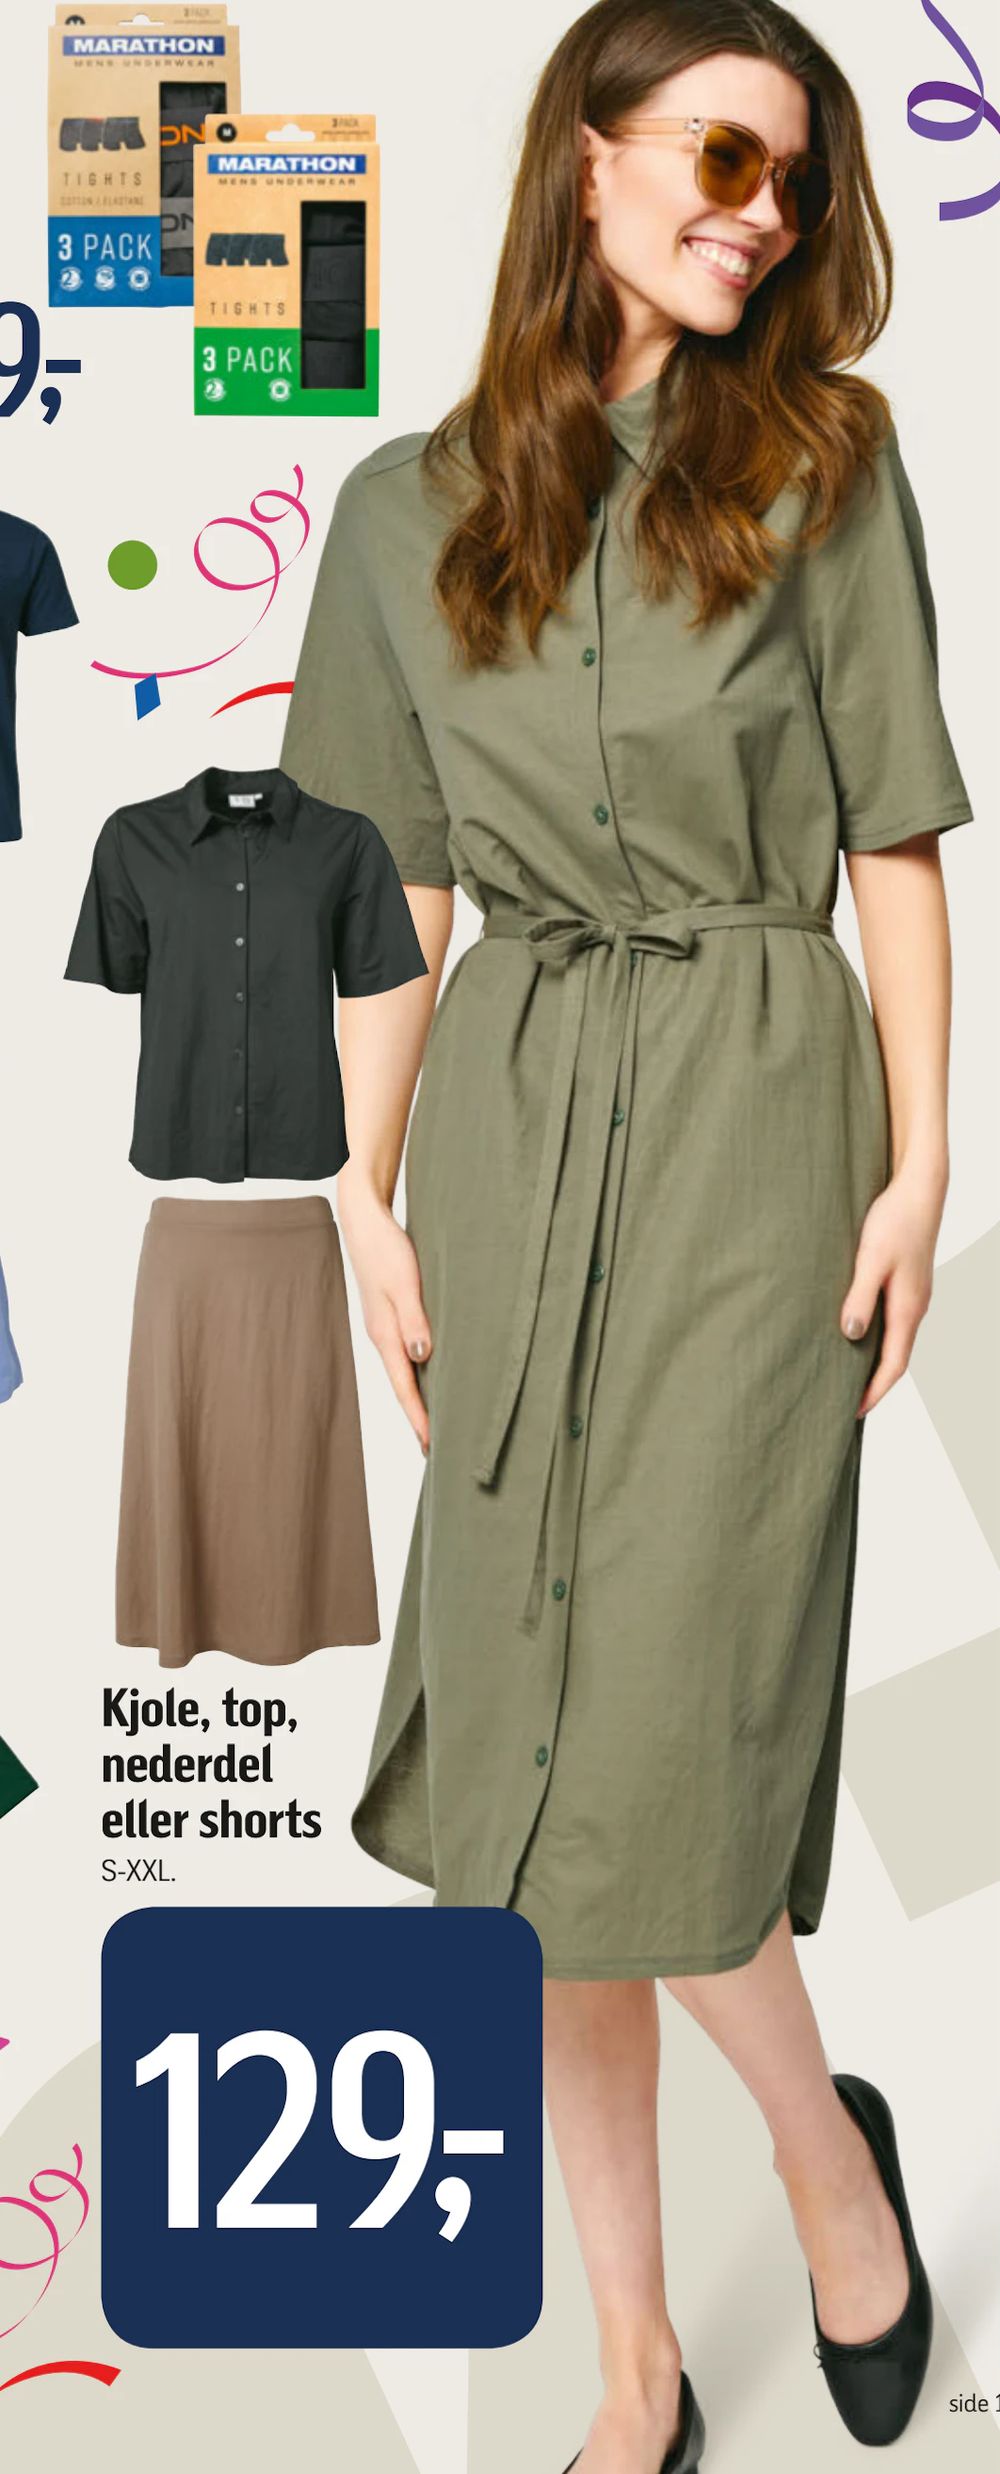 Tilbud på Kjole, top, nederdel eller shorts fra føtex til 129 kr.